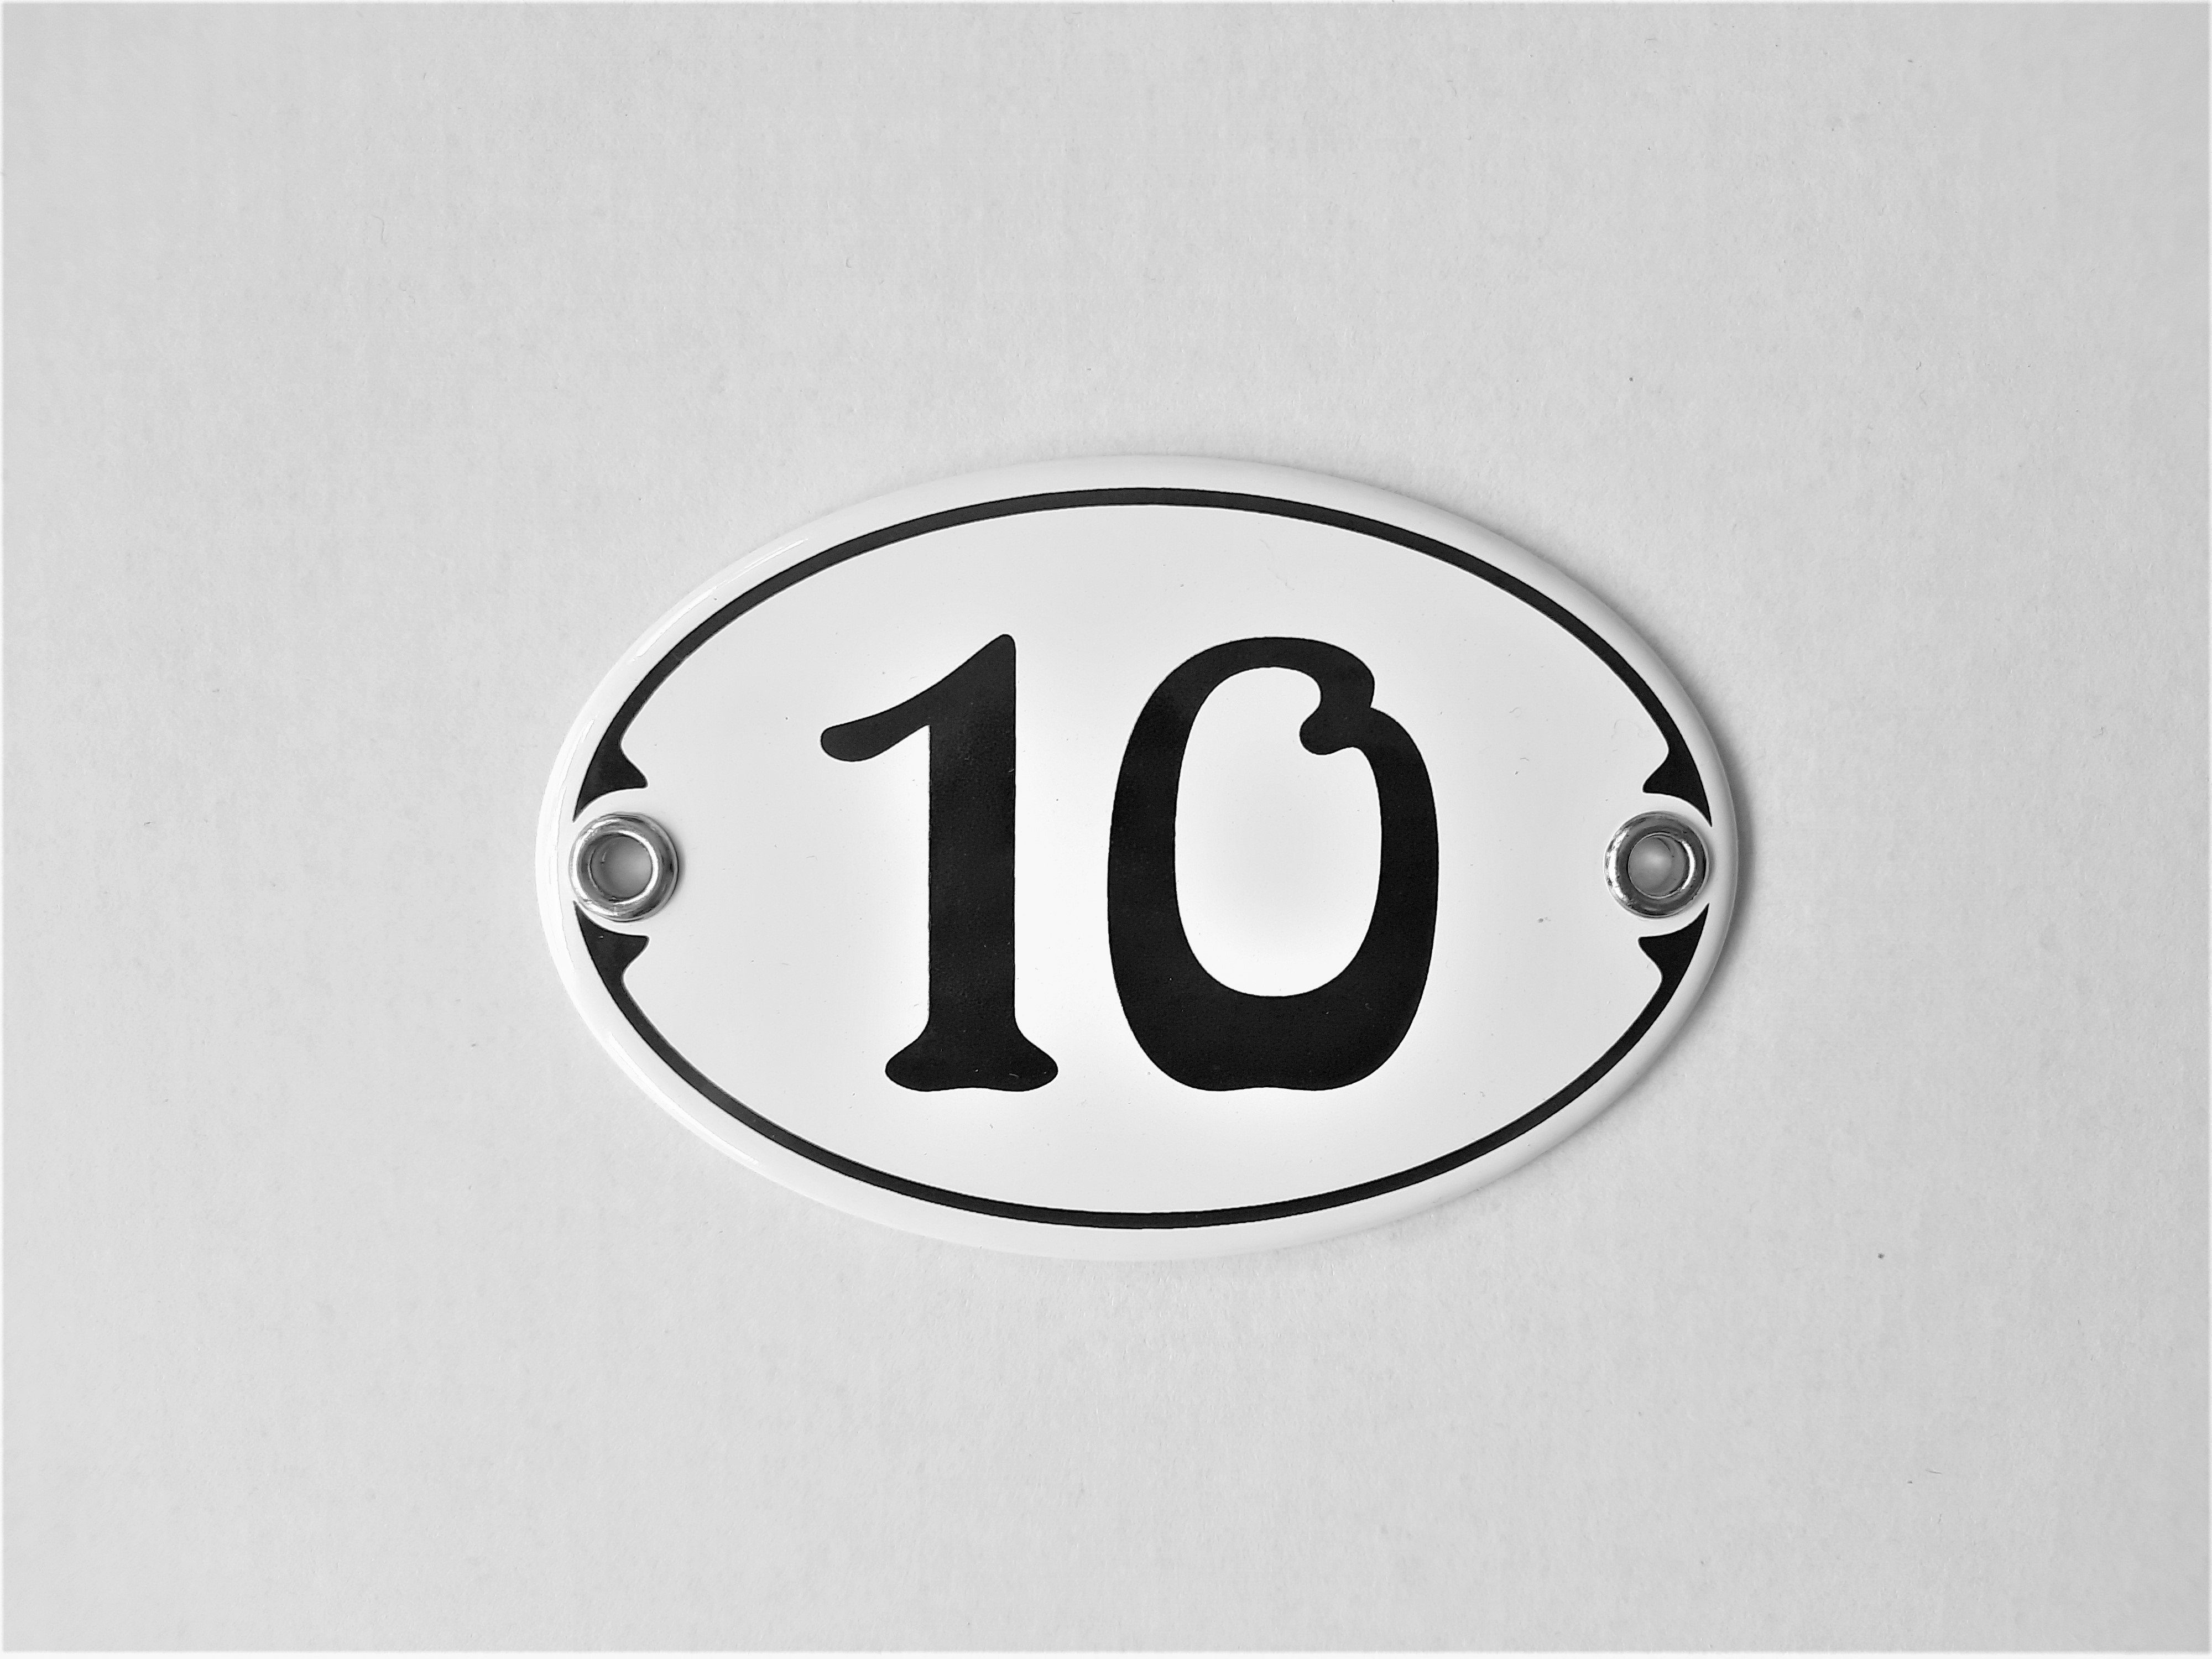 Elina Email Schilder Hausnummer Zahlenschild "10", (Emaille/Email) | Hausnummern